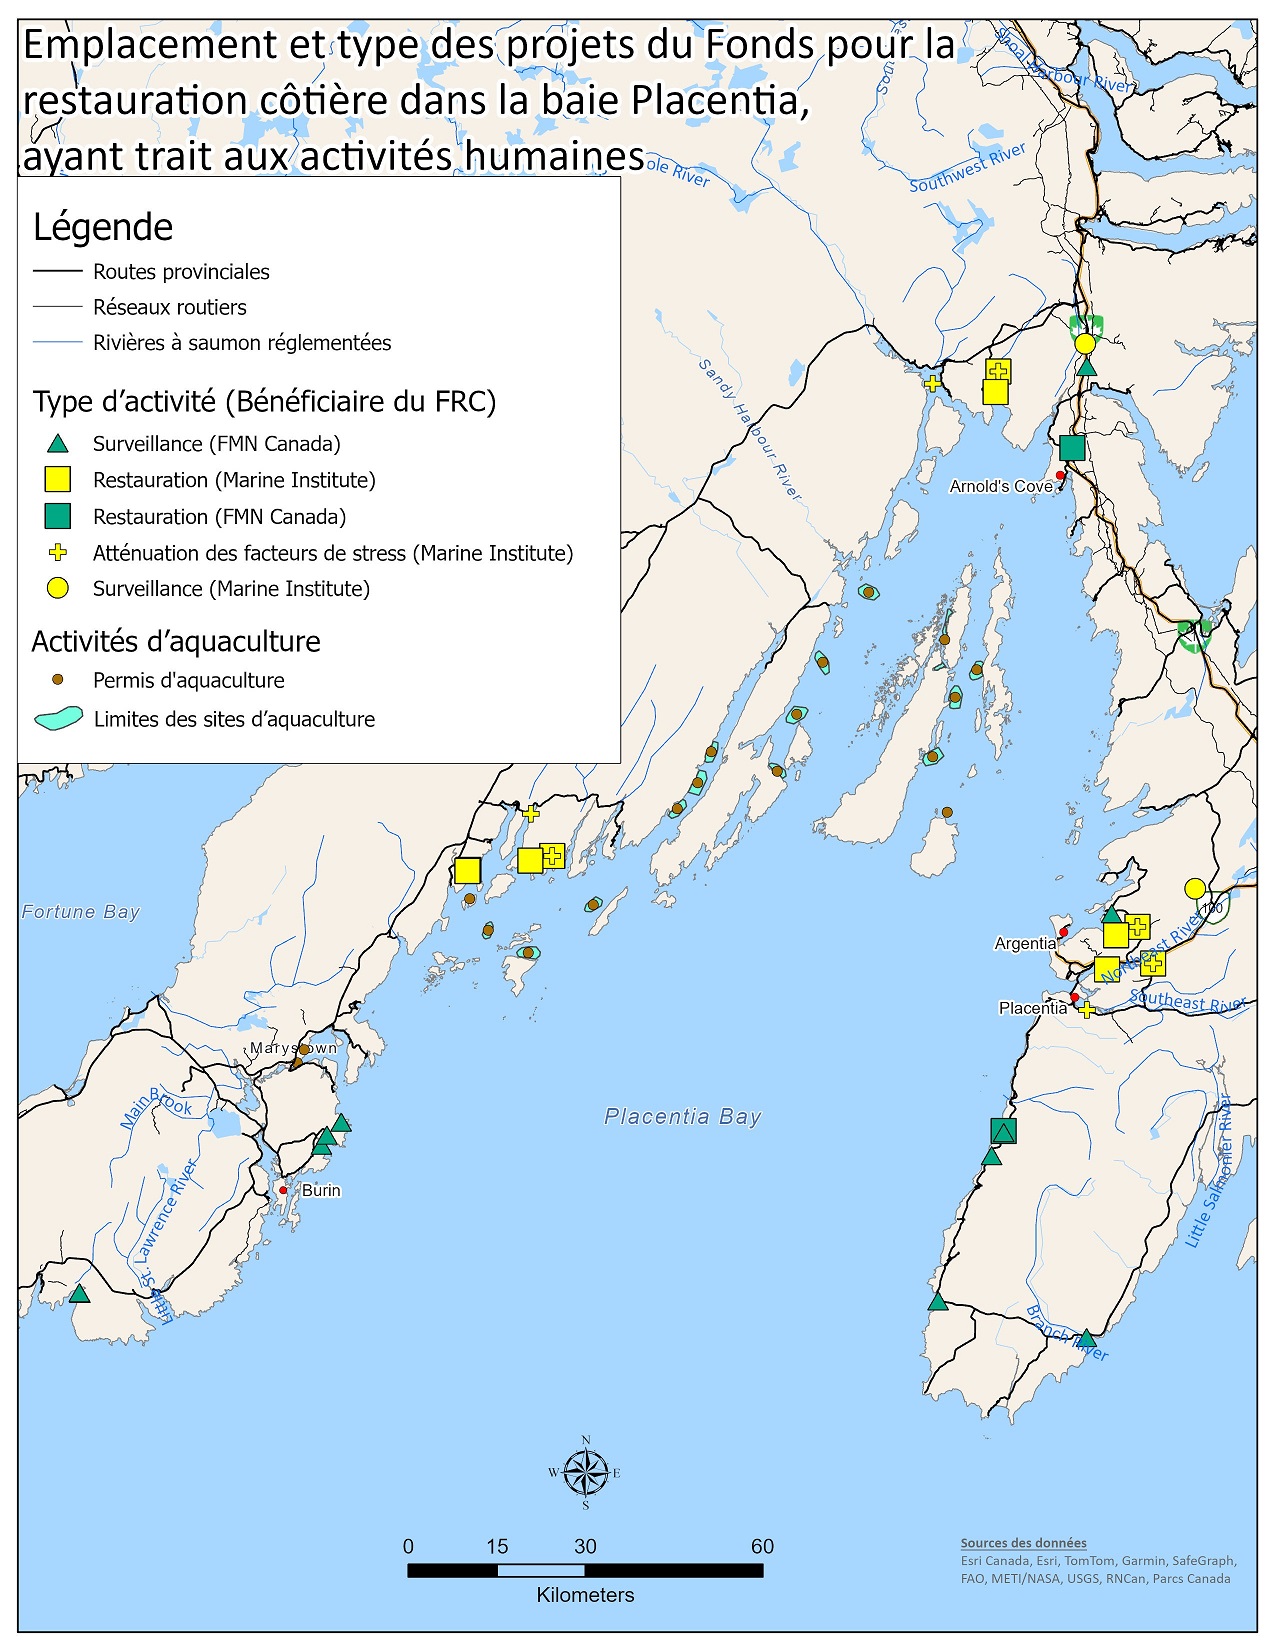 Carte indiquant les emplacements physiques des projets du Fonds pour la restauration côtière dans la baie Placentia dans le contexte des activités humaines (p. ex., aquaculture et réseaux routiers).